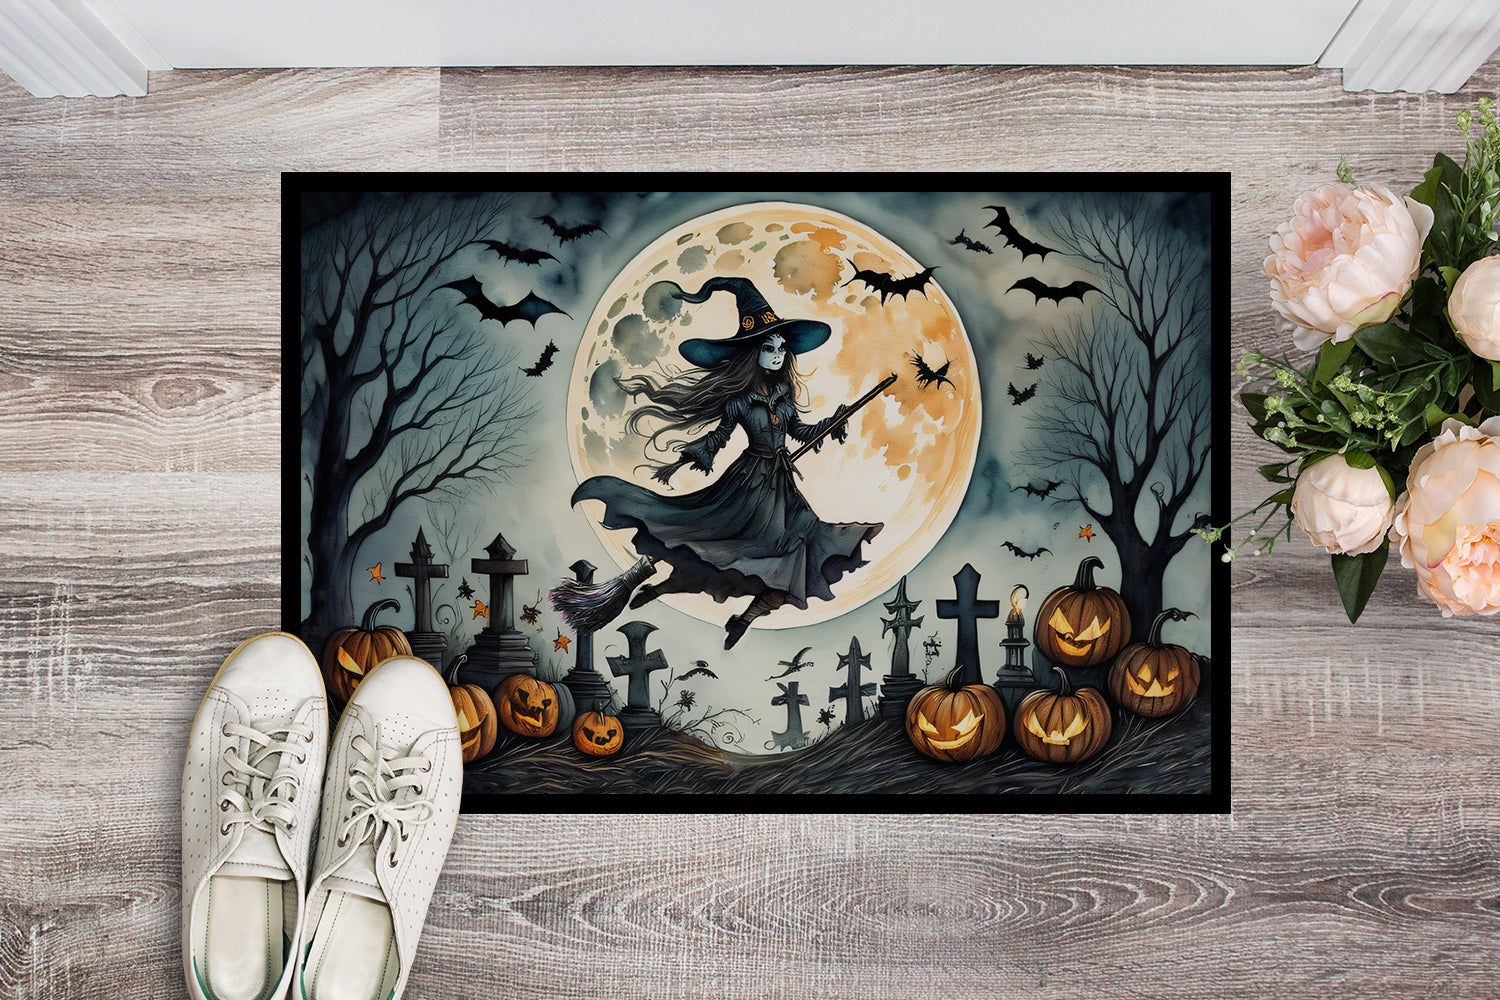 Buy this Flying Witch Spooky Halloween Doormat 18x27